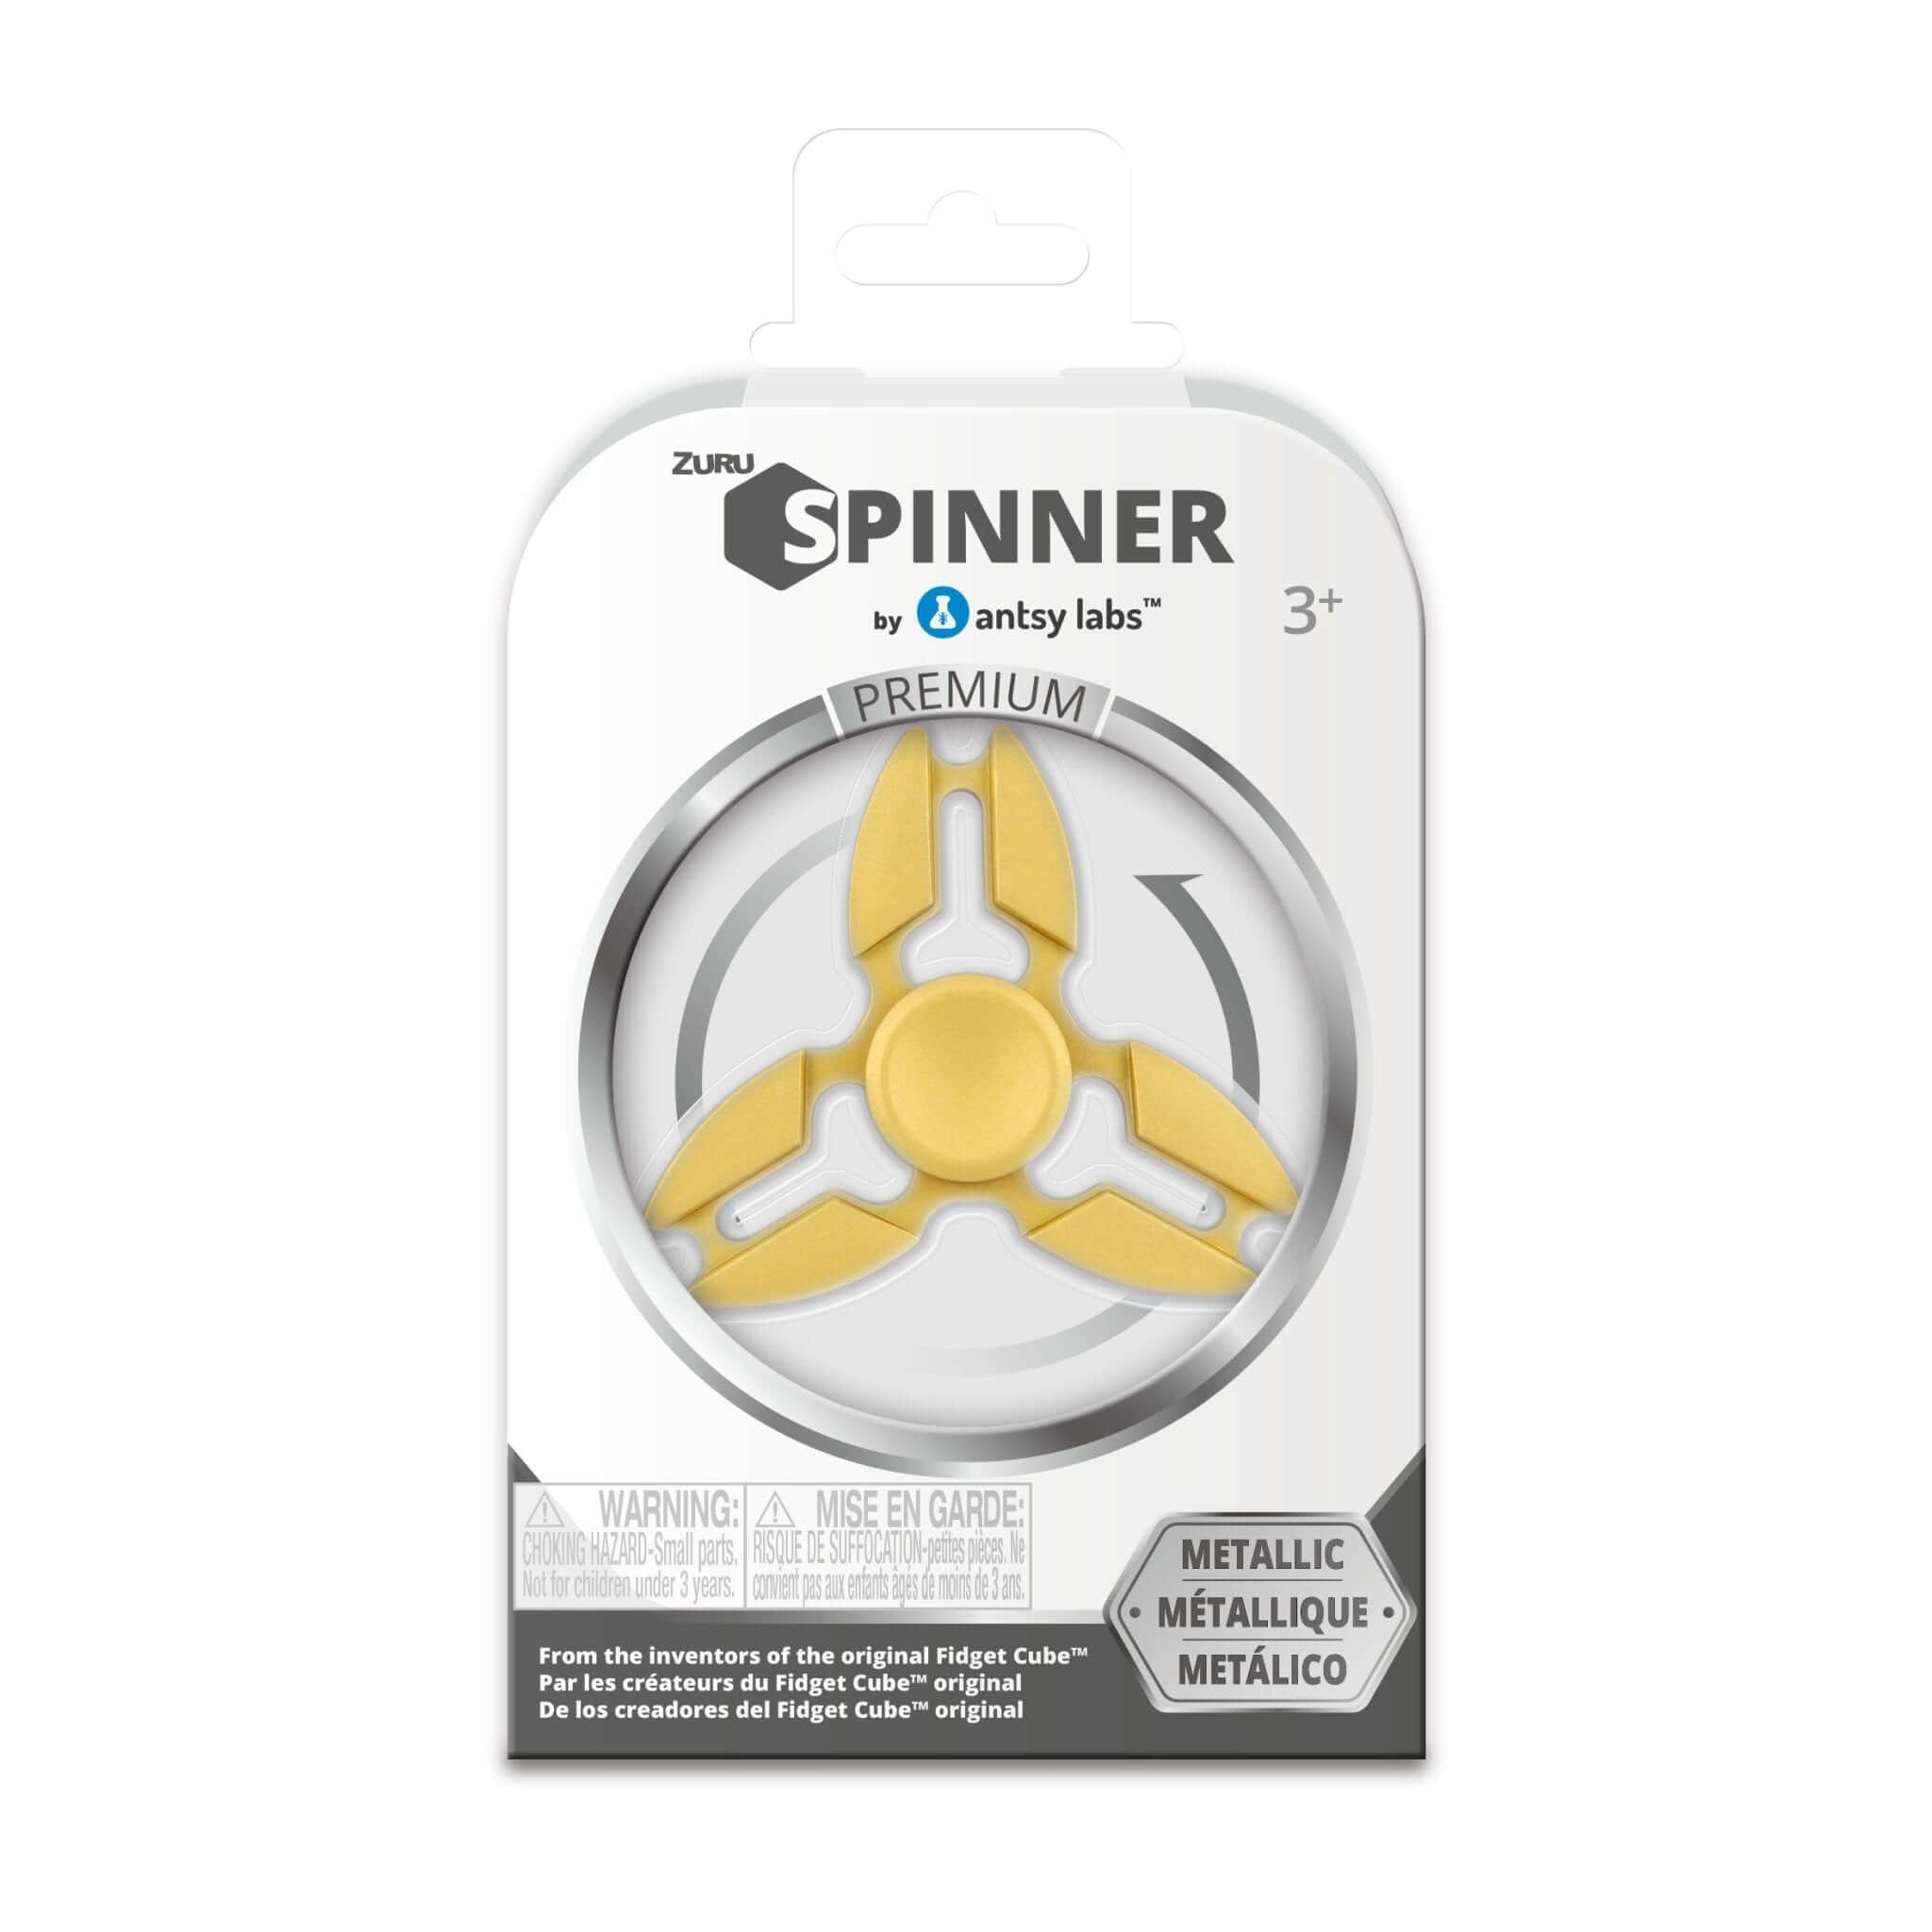 Lot of 3 Power Rangers Ninja Steel Fidget Spinners by Fijix Yellow Blue Gold